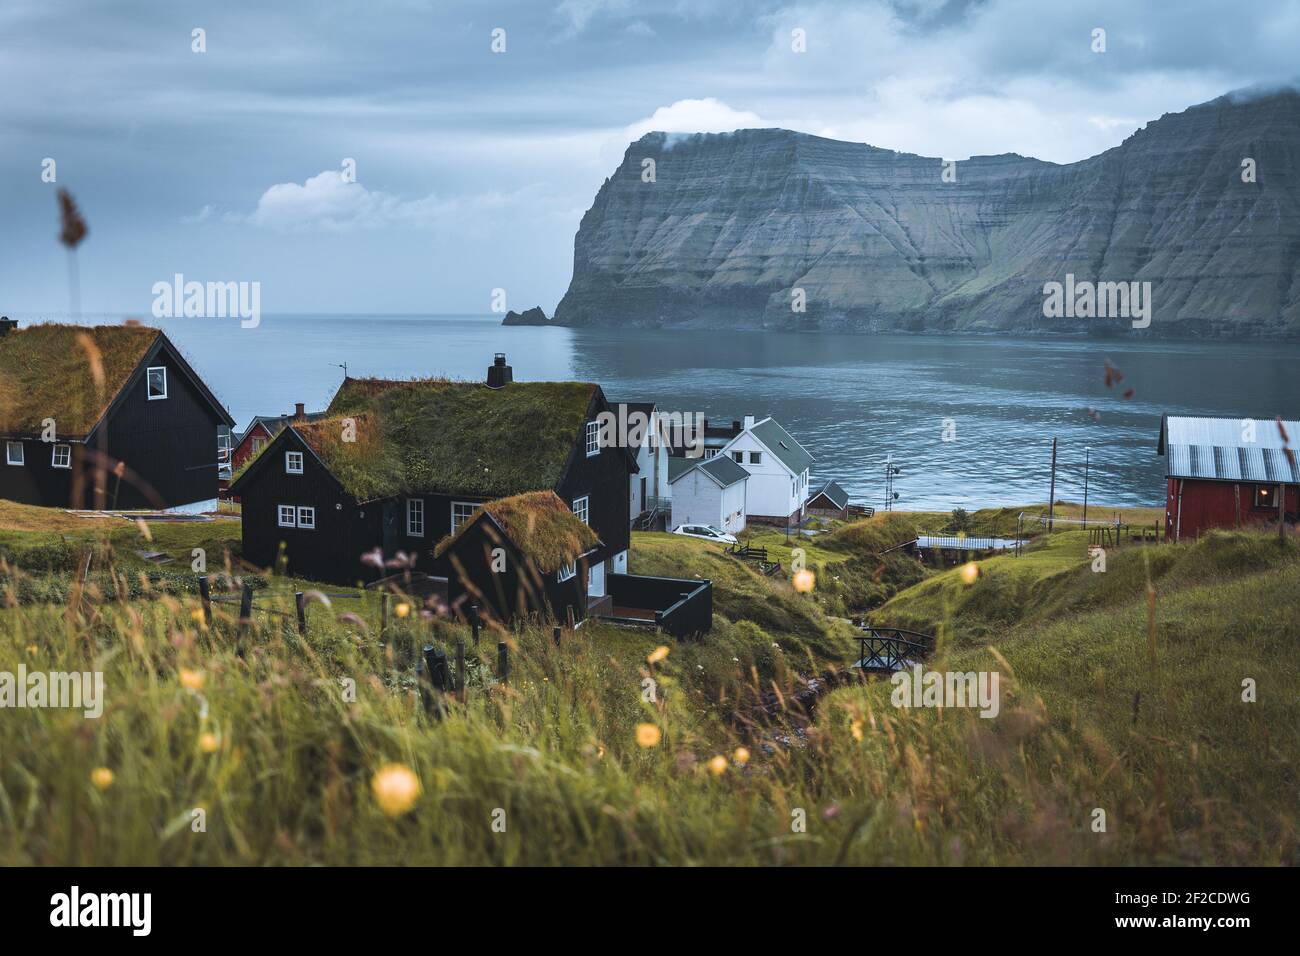 Dorf von Mikladalur befindet sich auf der Insel Kalsoy, Färöer, Dänemark Stockfoto